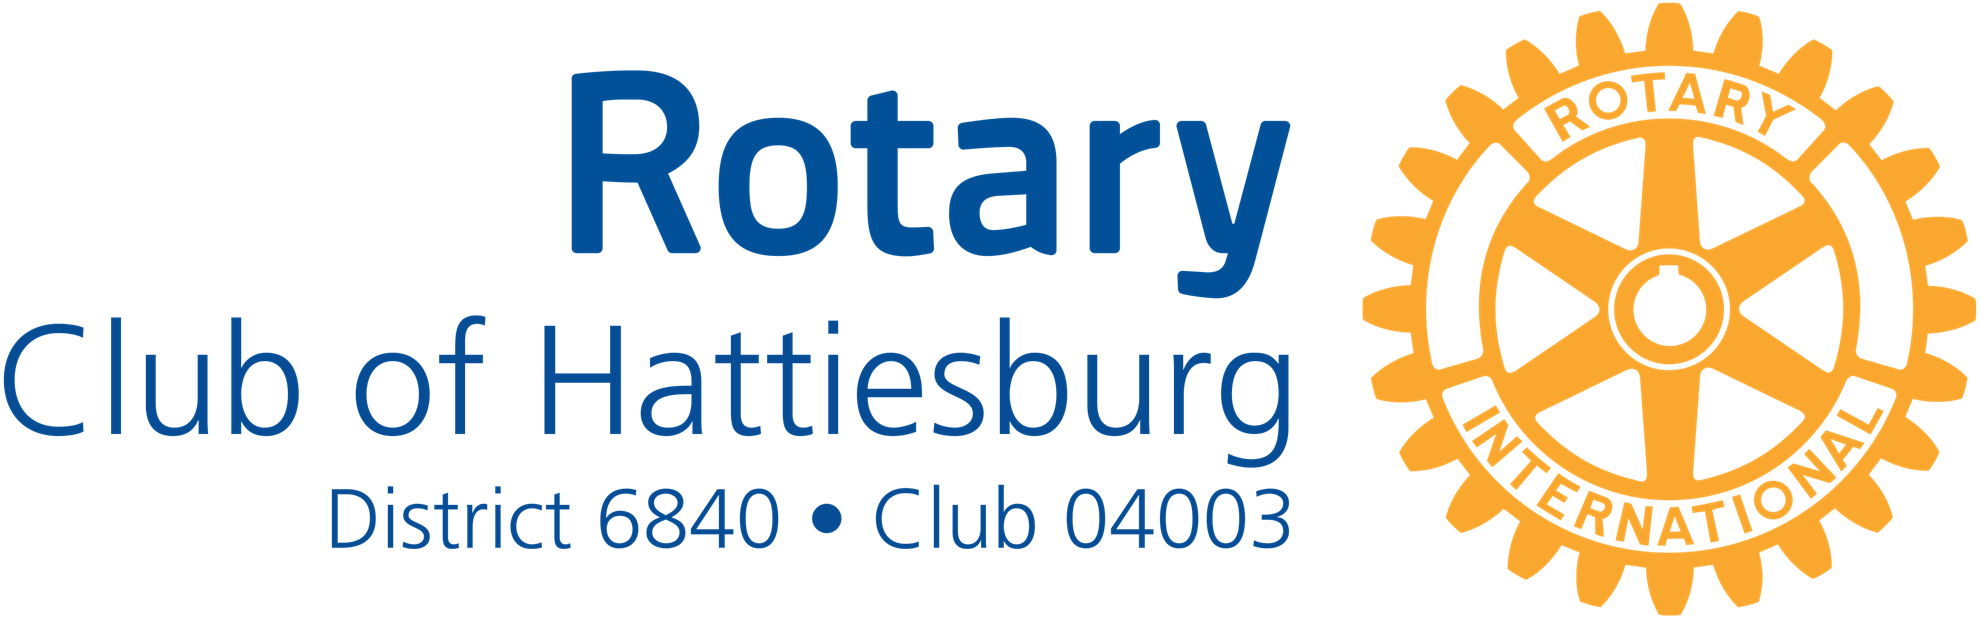 Hattiesburg Weekly Club Meeting